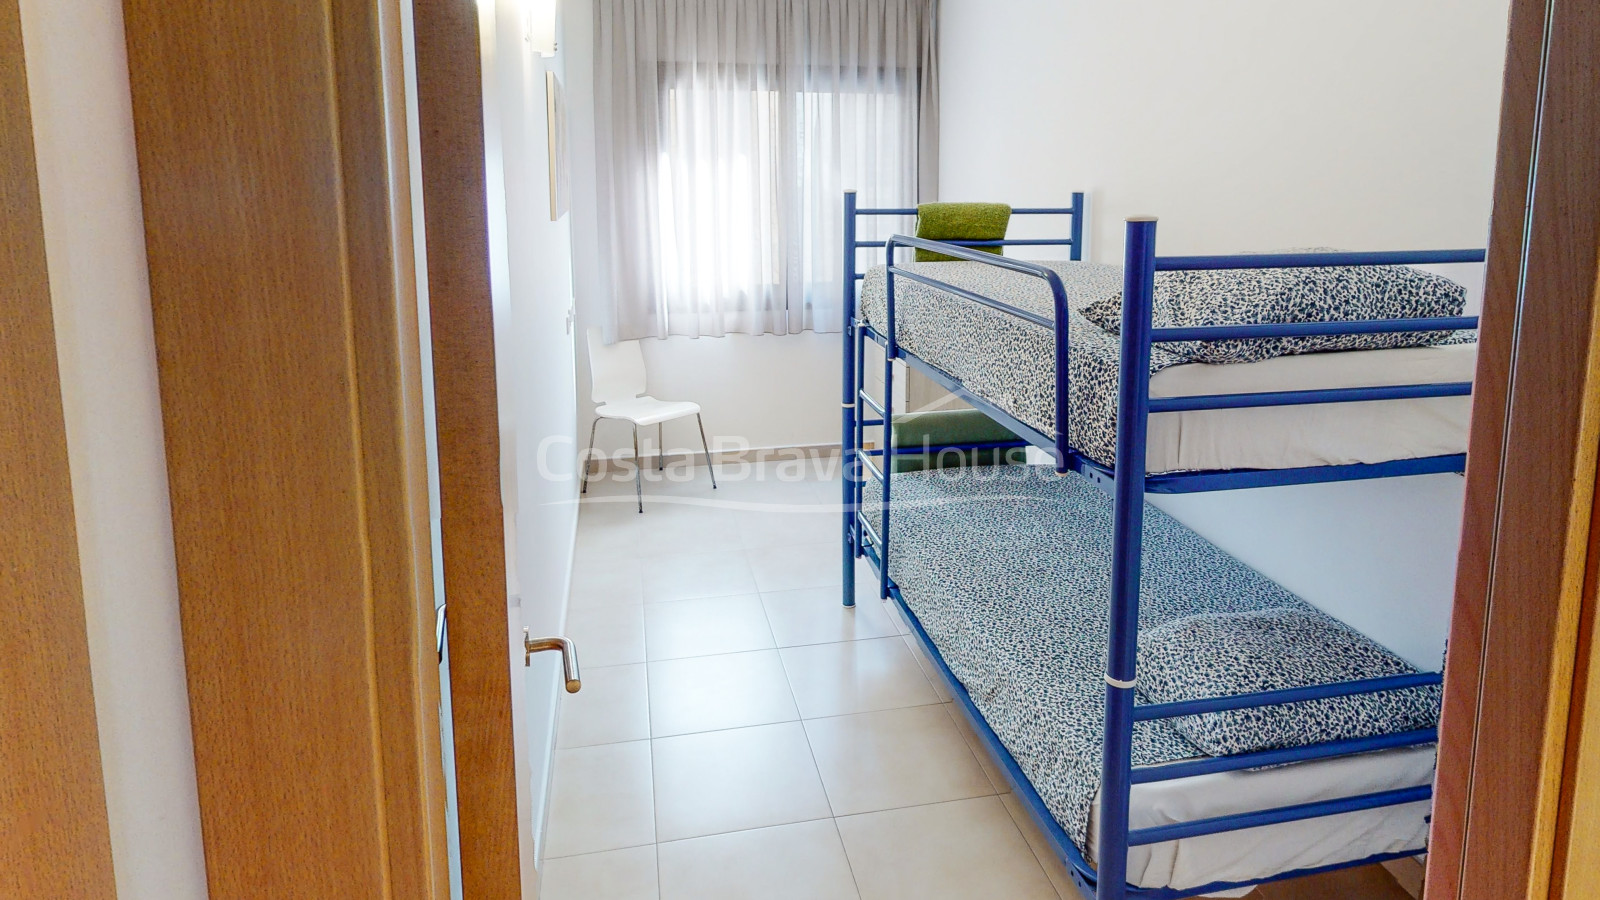 Apartament de 2 dormitoris amb garatge en venda a Tamariu, a només uns passos de la platja i el mar